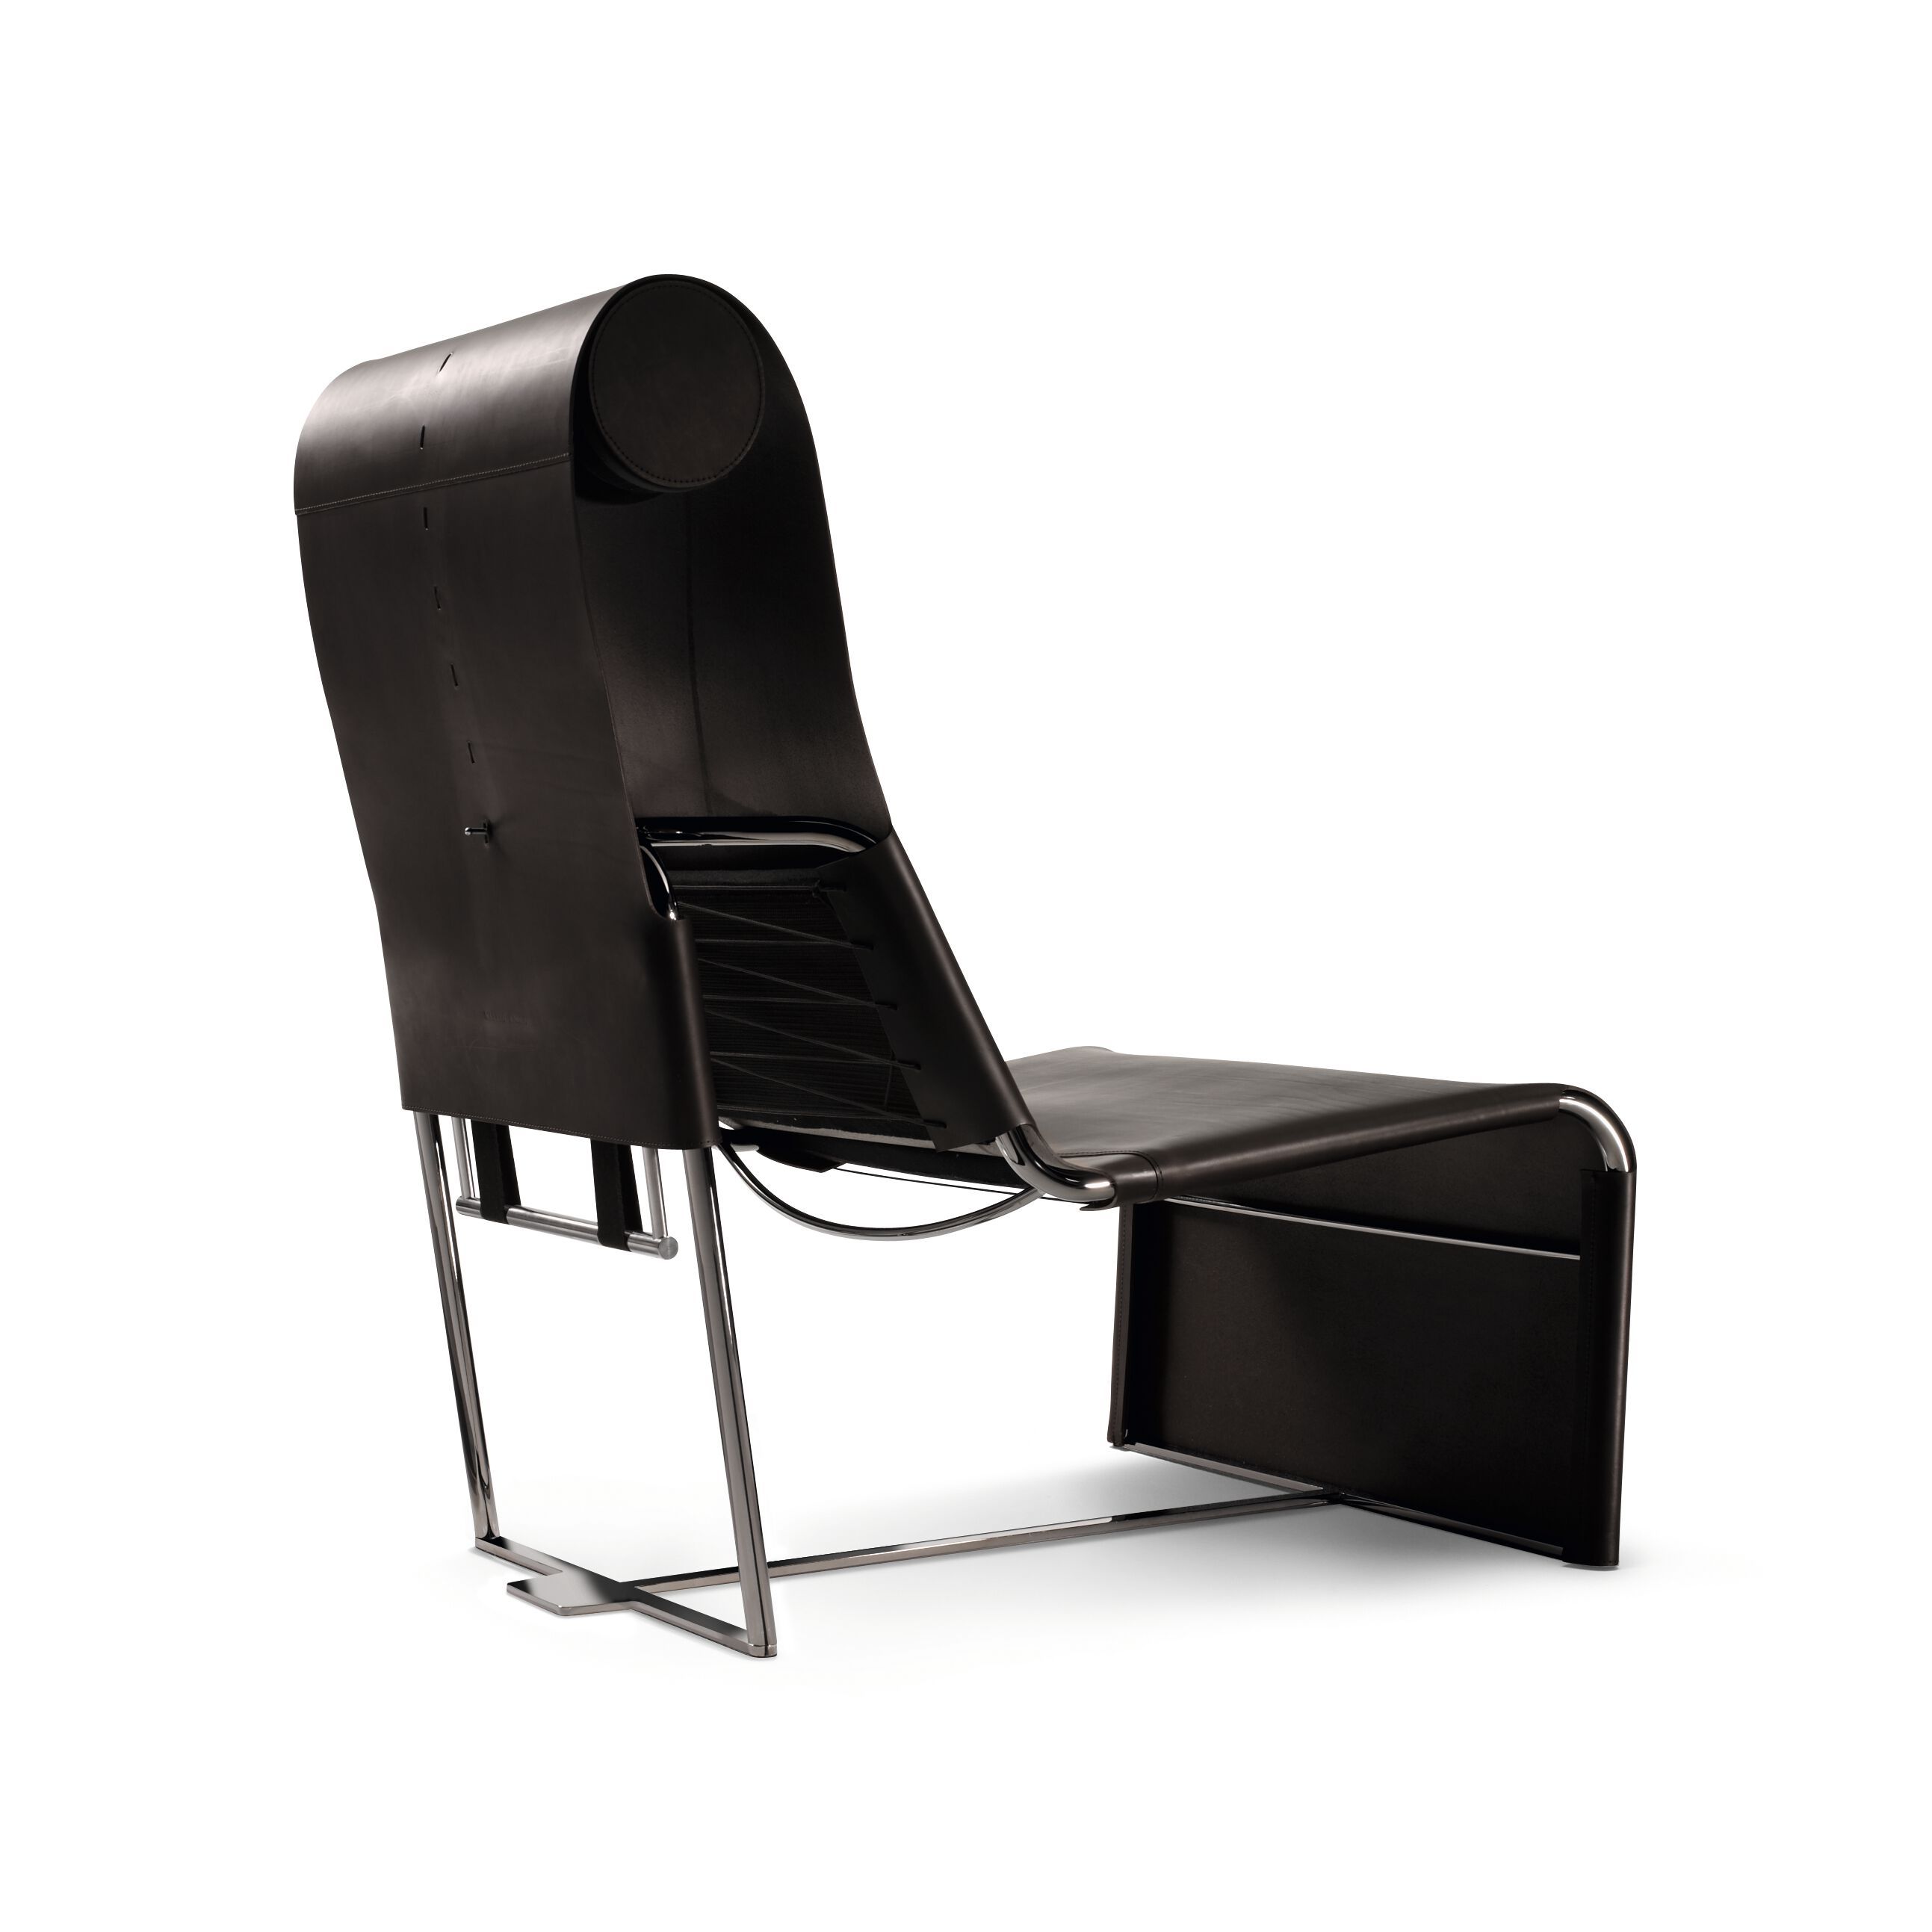 06_WK-Atelier_Chair-0017-H.tif